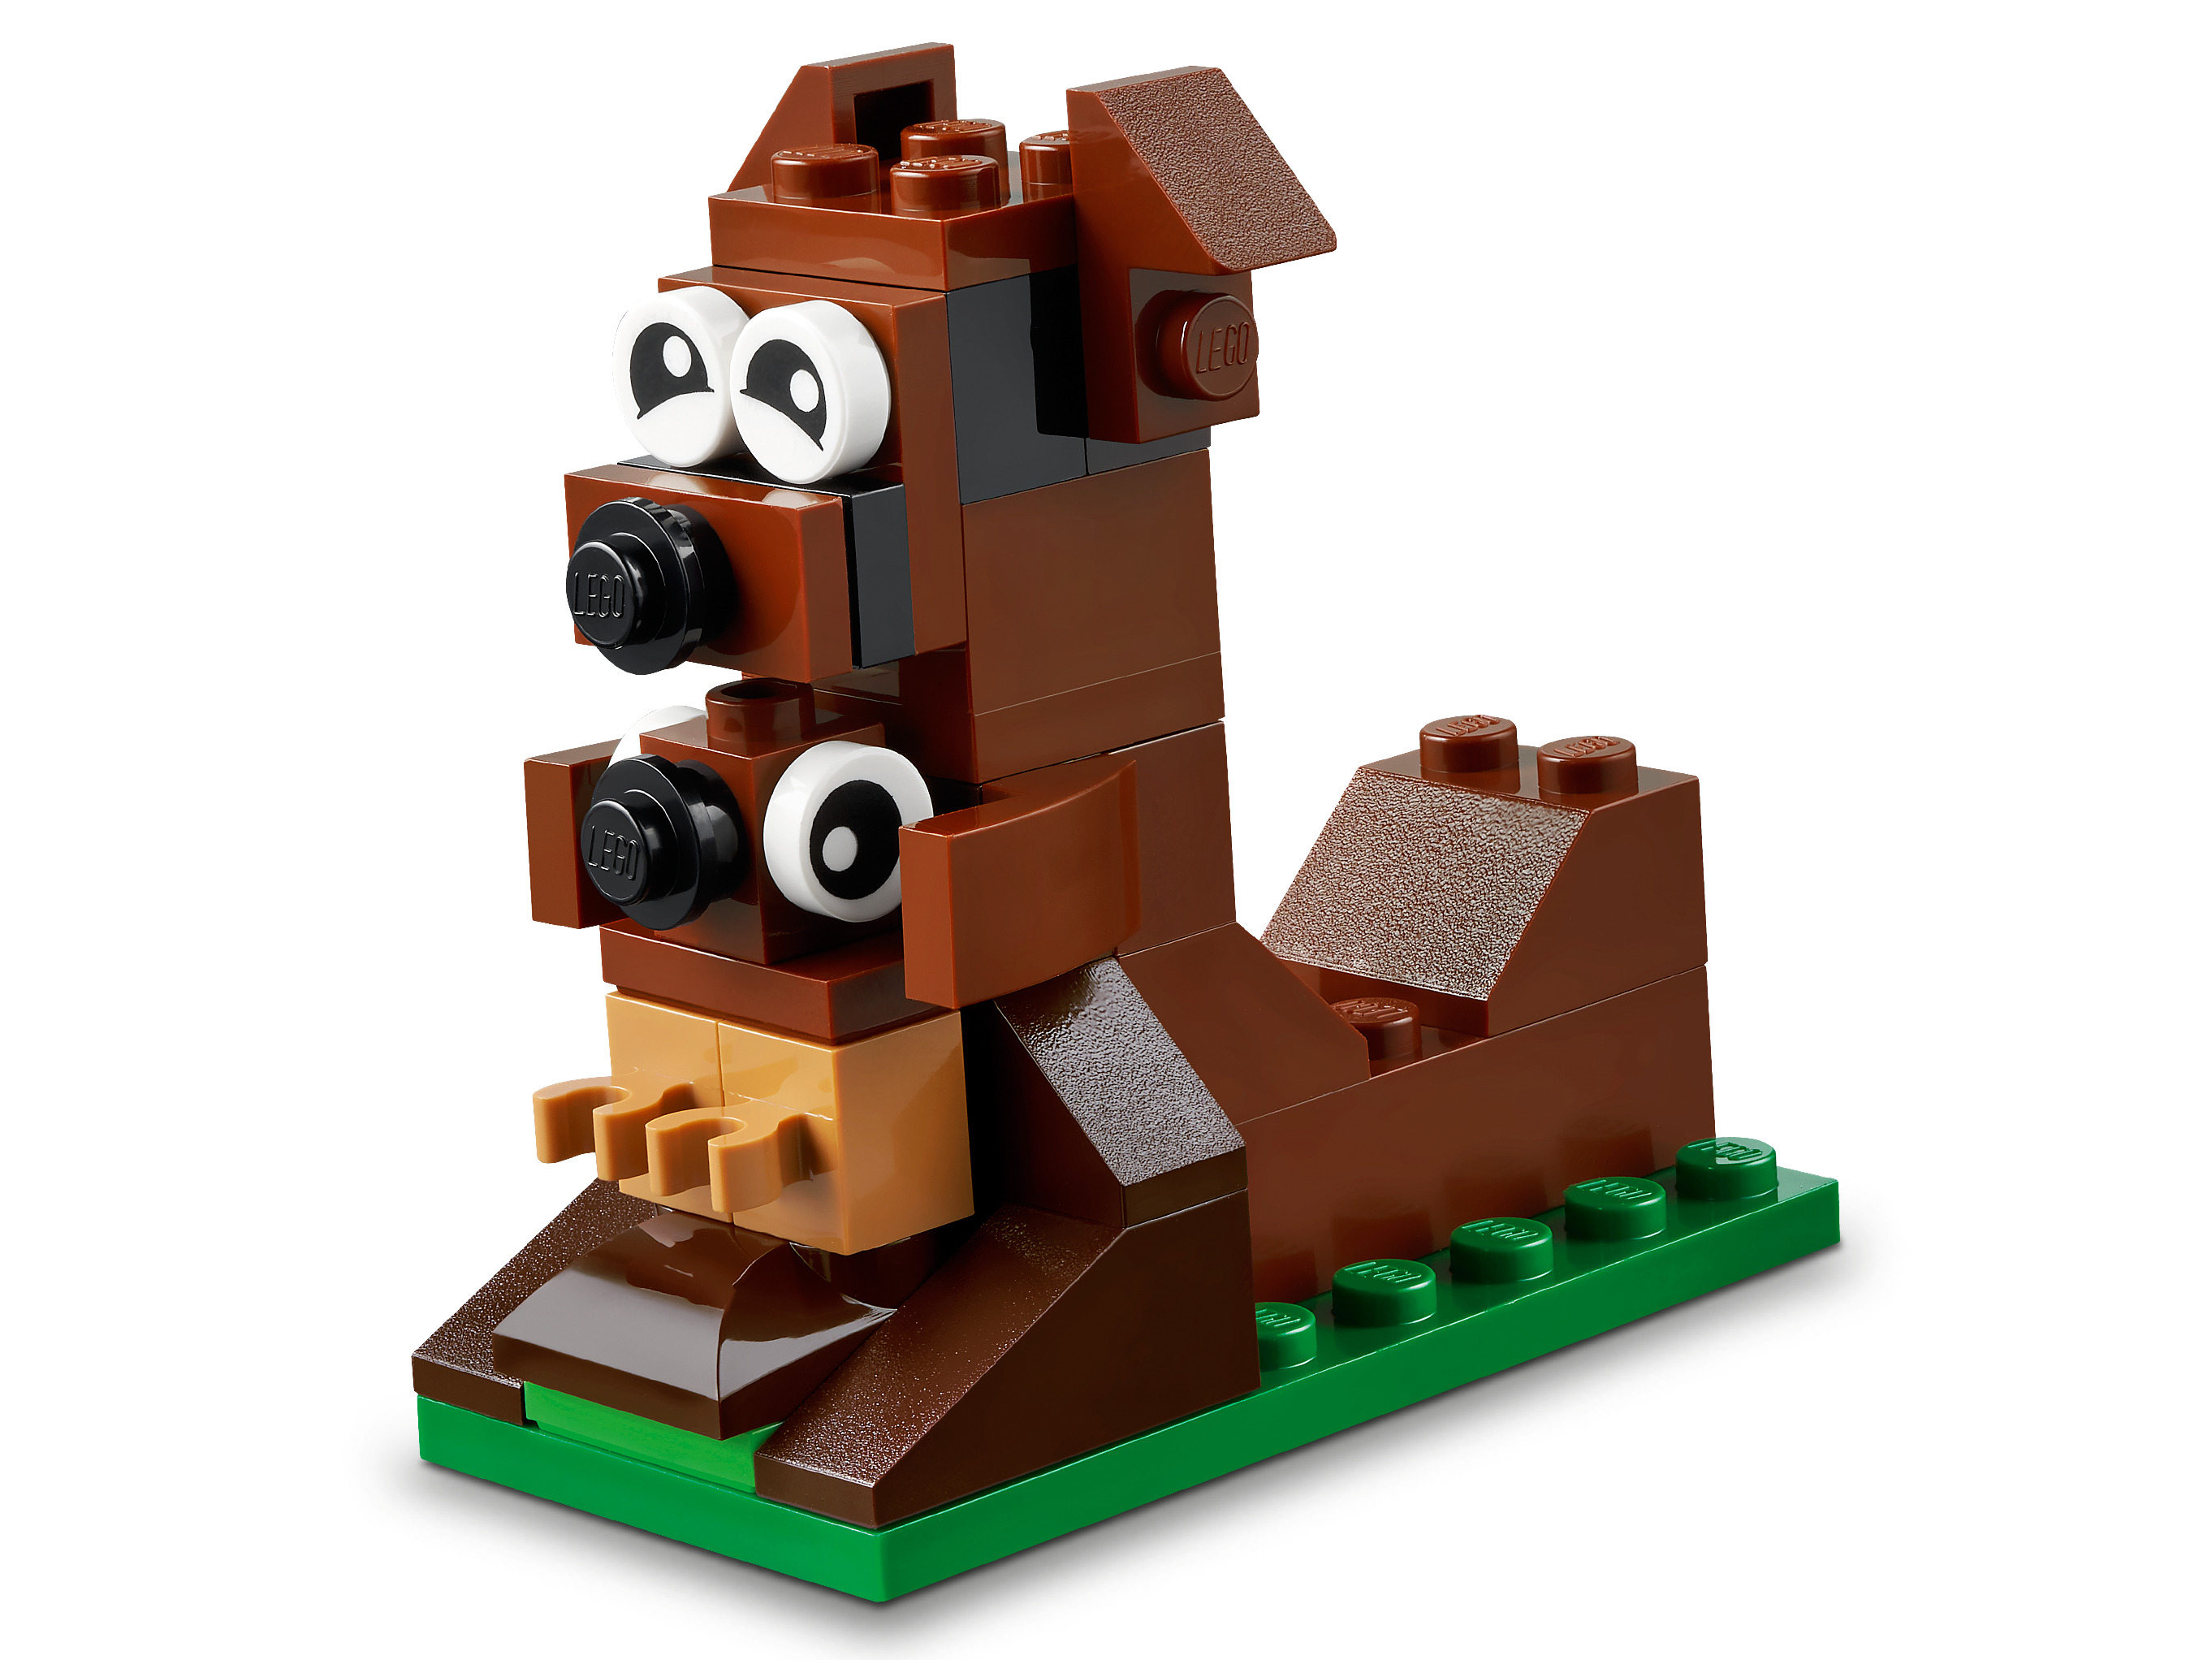 Конструктор LEGO Classic «Вокруг света» 11015 / 950 деталей